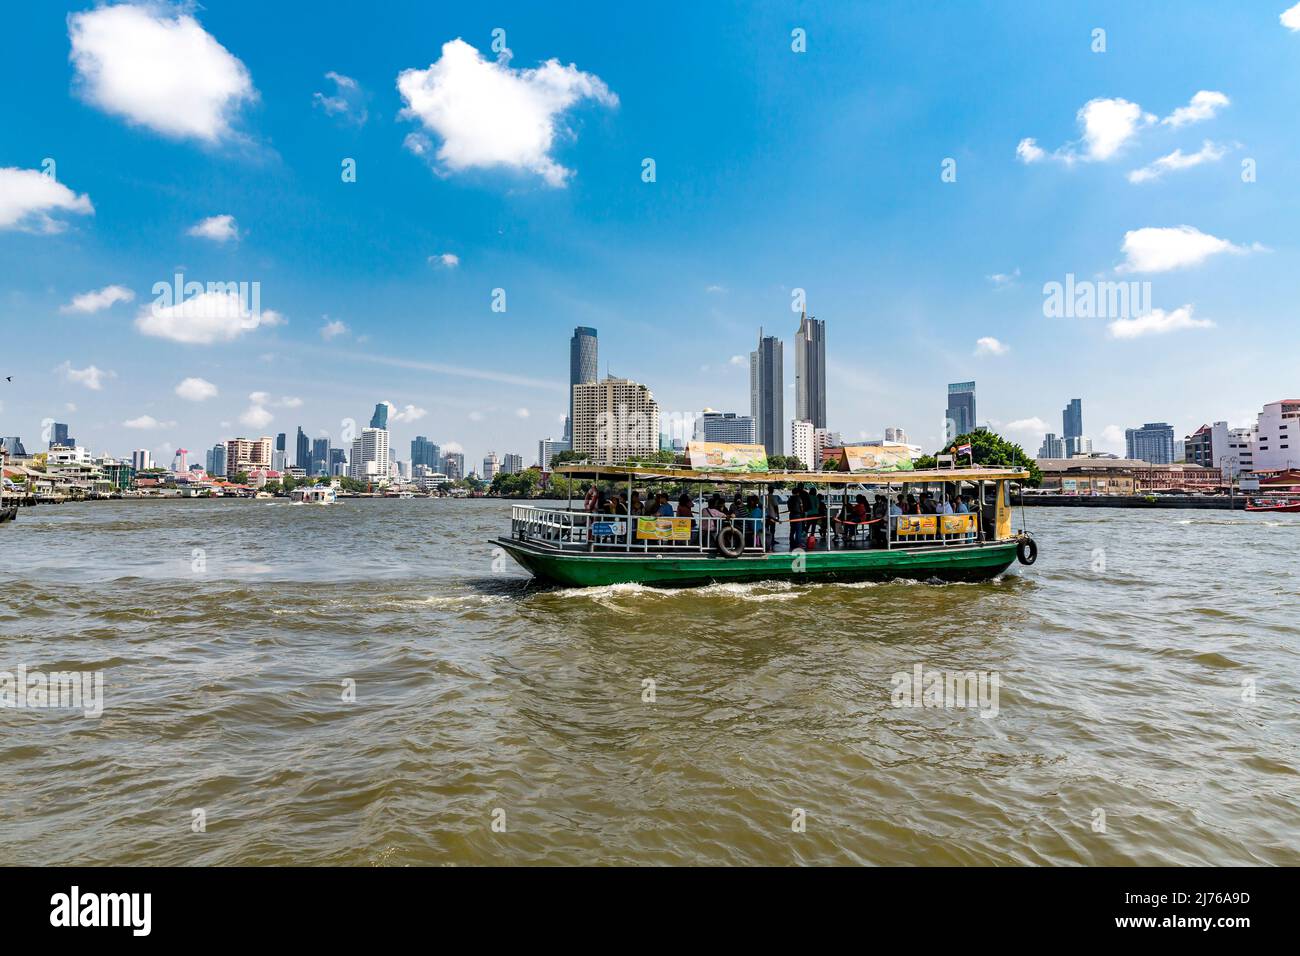 Boat on Chao Phraya river, skylines, Bangkok, Thailand, Asia Stock Photo